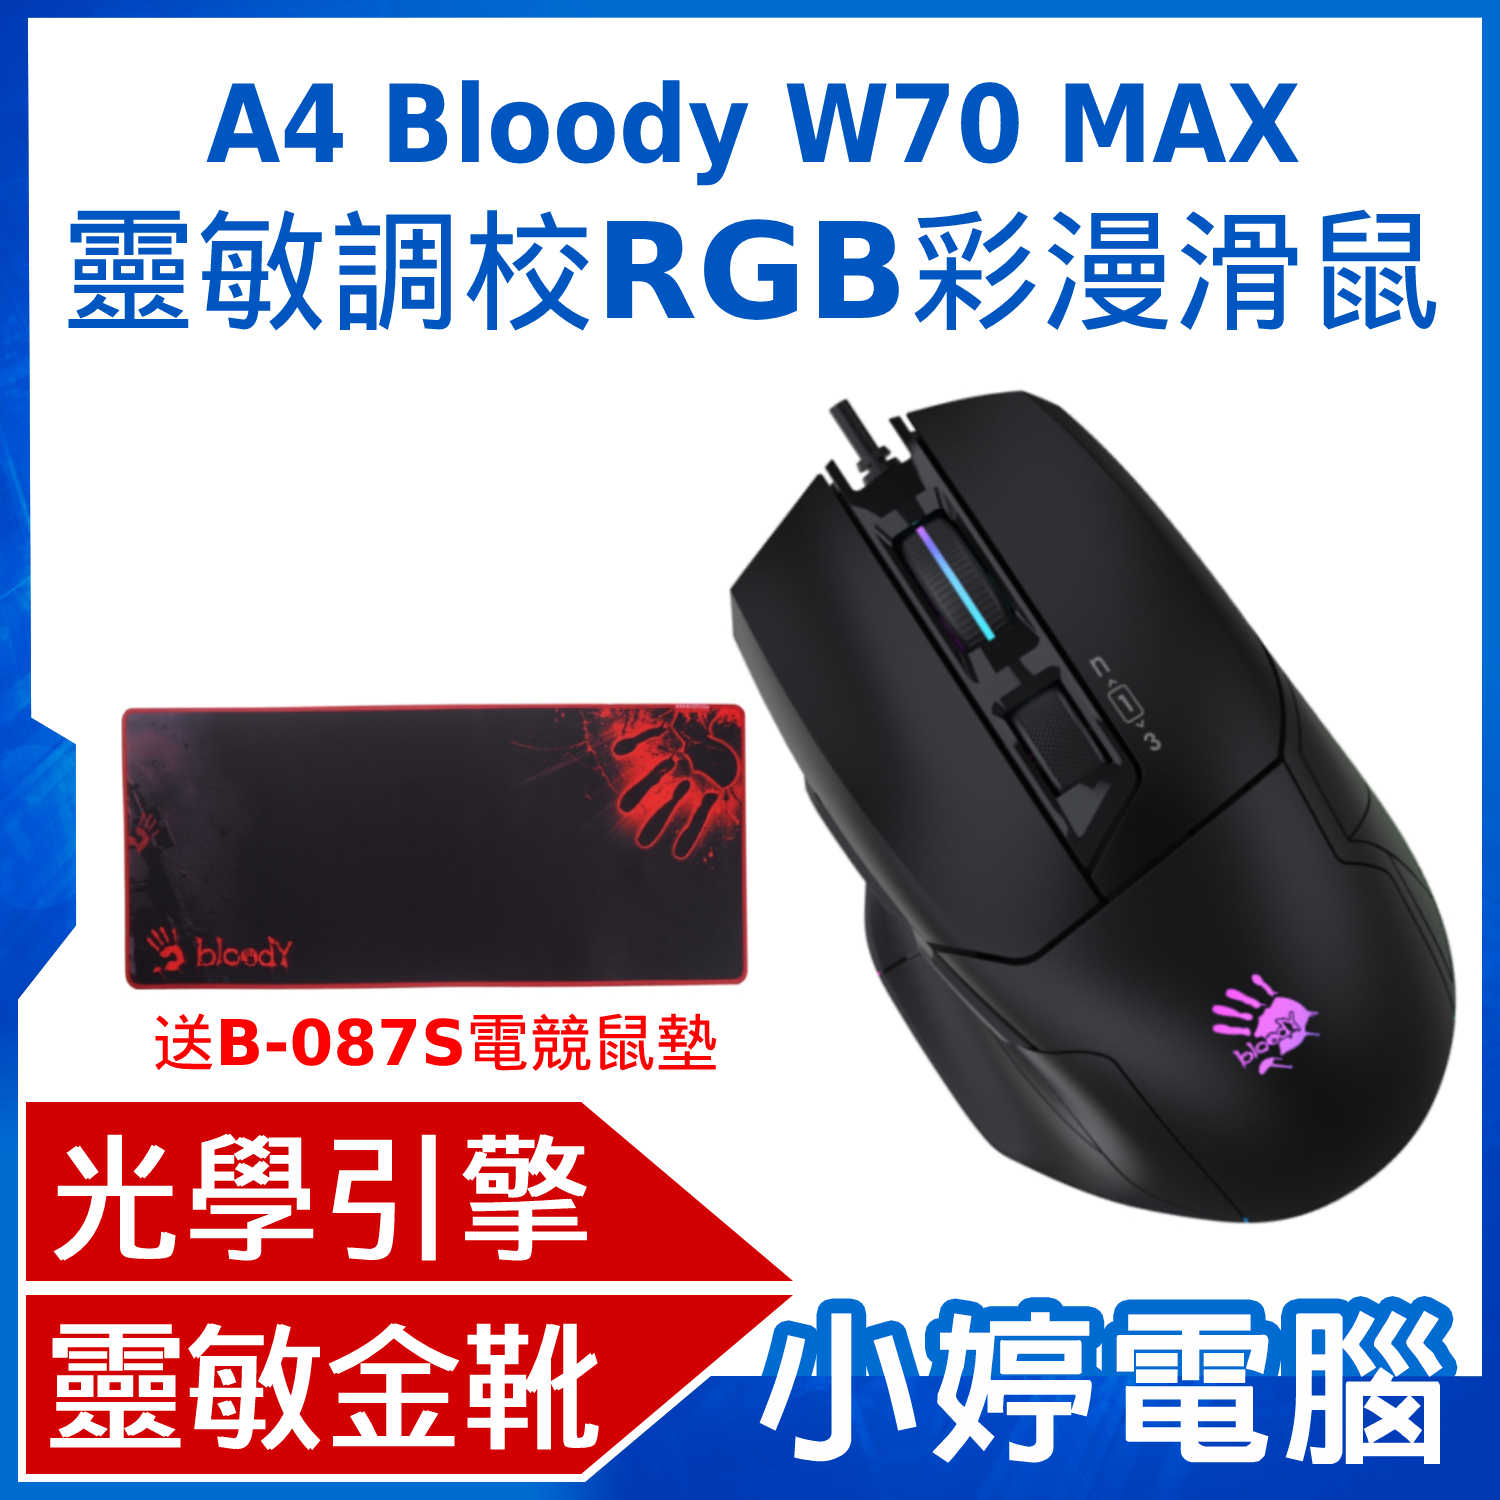 【小婷電腦】A4 Bloody W70 MAX 靈敏調校RGB彩漫滑鼠(未激活) 削光黑 送B-087S電競滑鼠墊